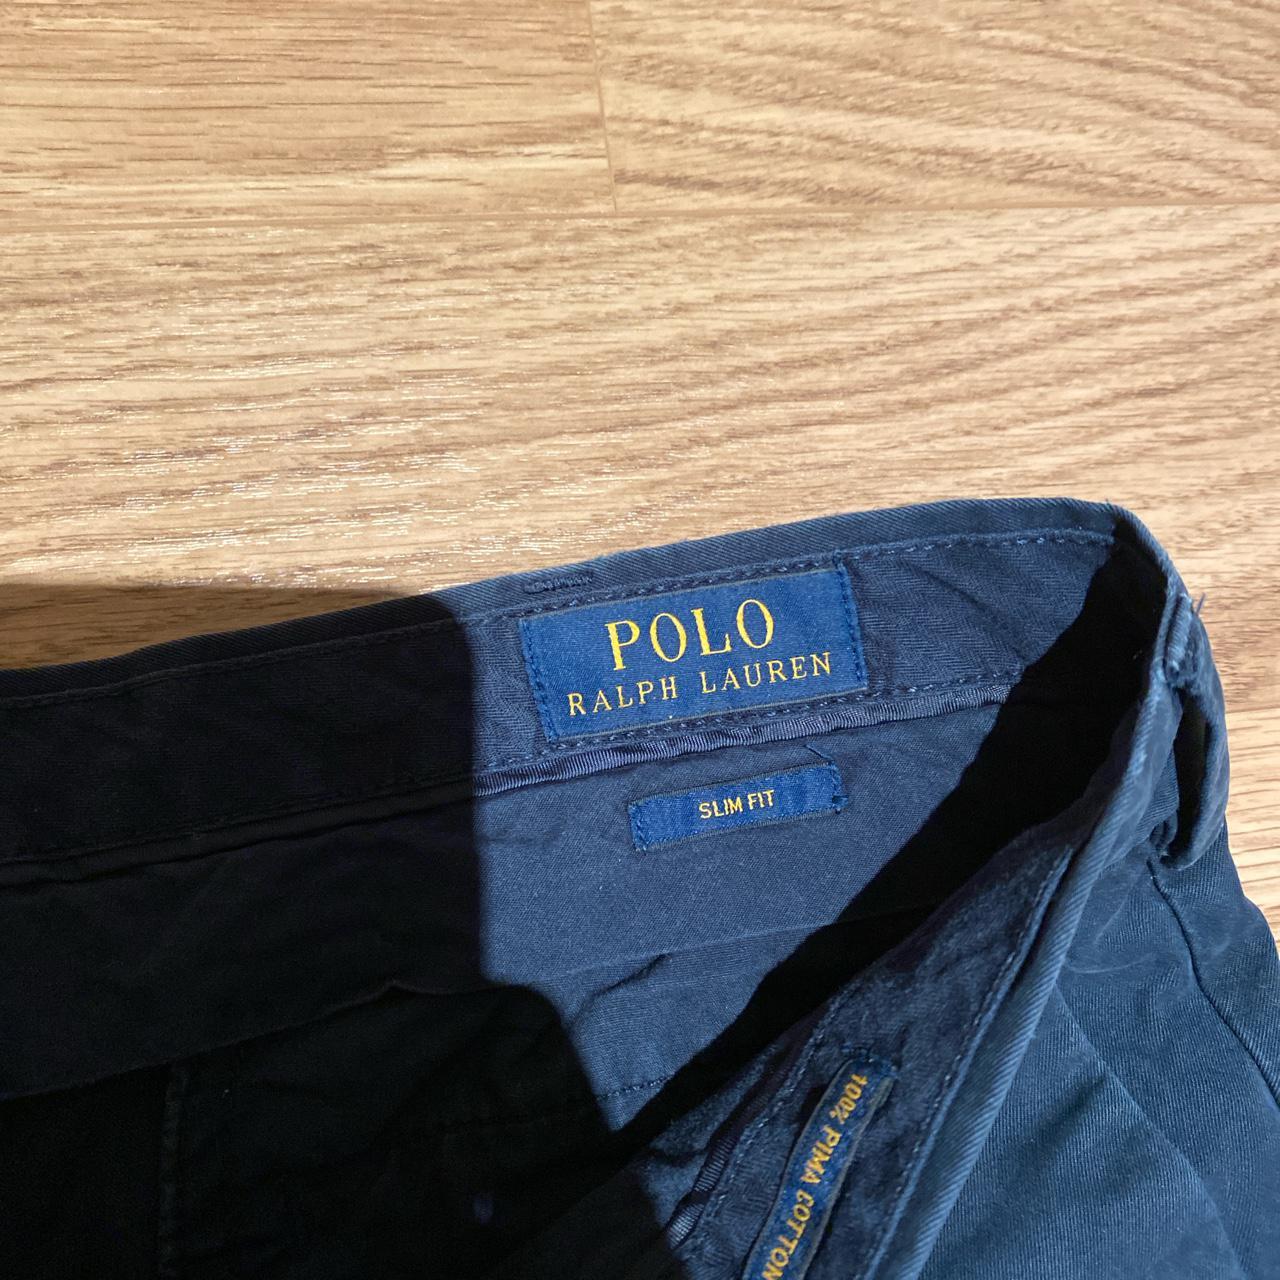 Product Image 2 - Polo Ralph Lauren Chinos. 32/32

#ralphlauren